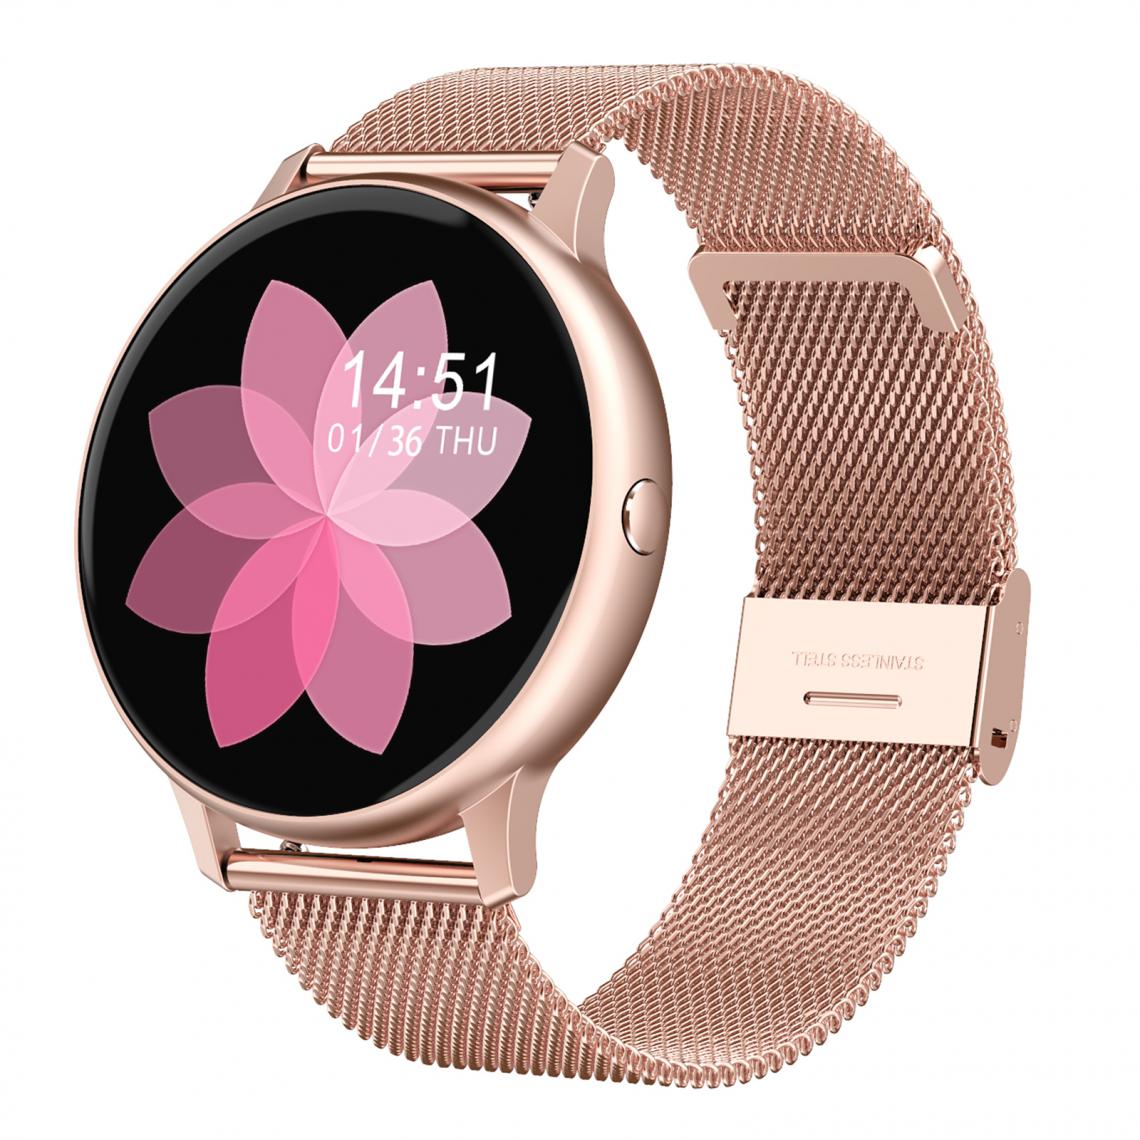 marque generique - DT88 PRO Smart Watch Moniteur De Fréquence Cardiaque ECG Pour IOS Android Silicone Noir - Montre connectée